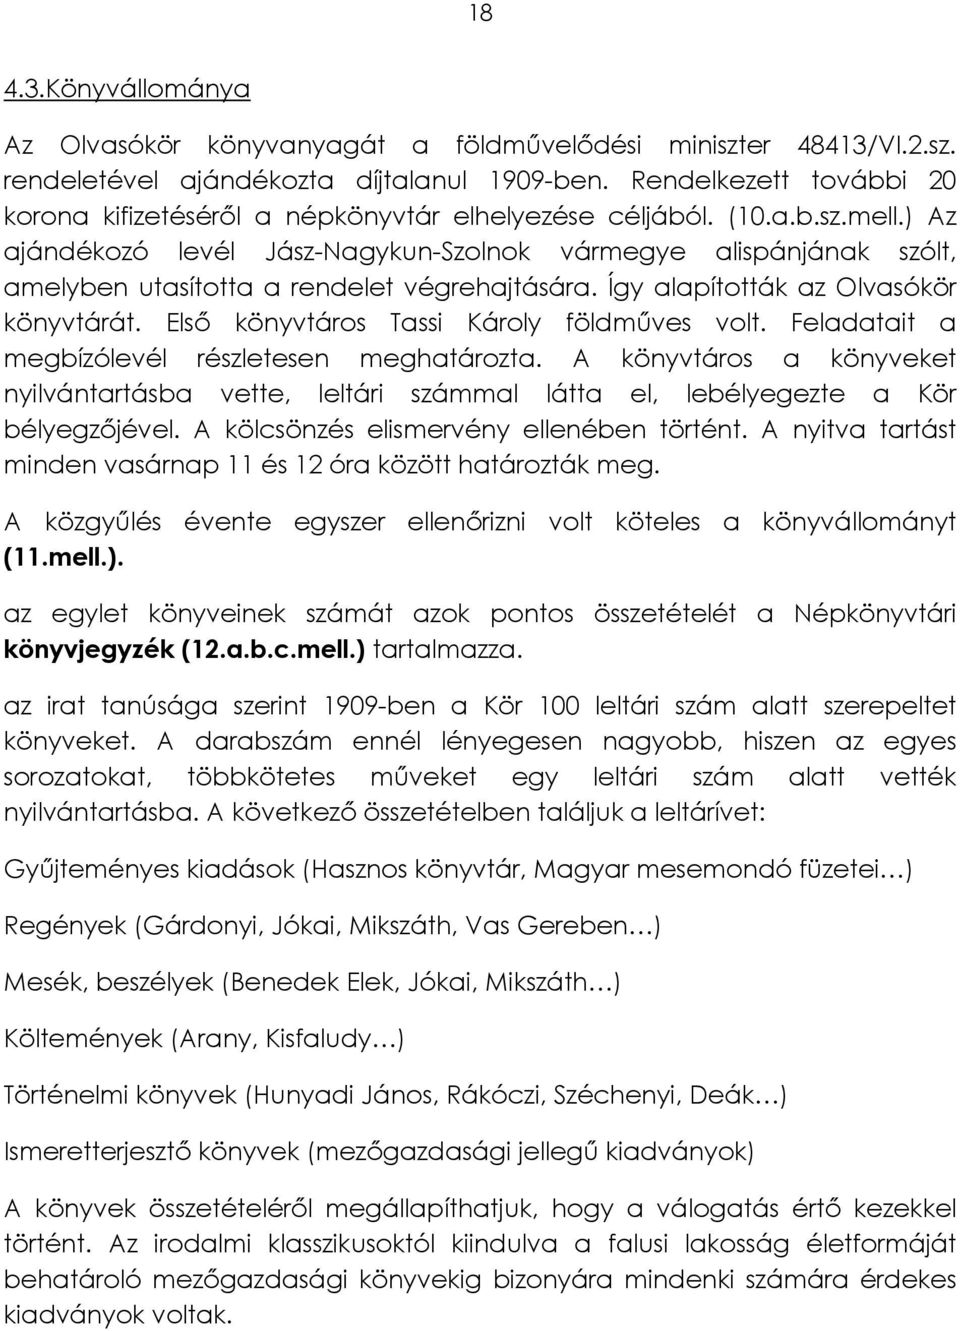 ) Az ajándékozó levél Jász-Nagykun-Szolnok vármegye alispánjának szólt, amelyben utasította a rendelet végrehajtására. Így alapították az Olvasókör könyvtárát.